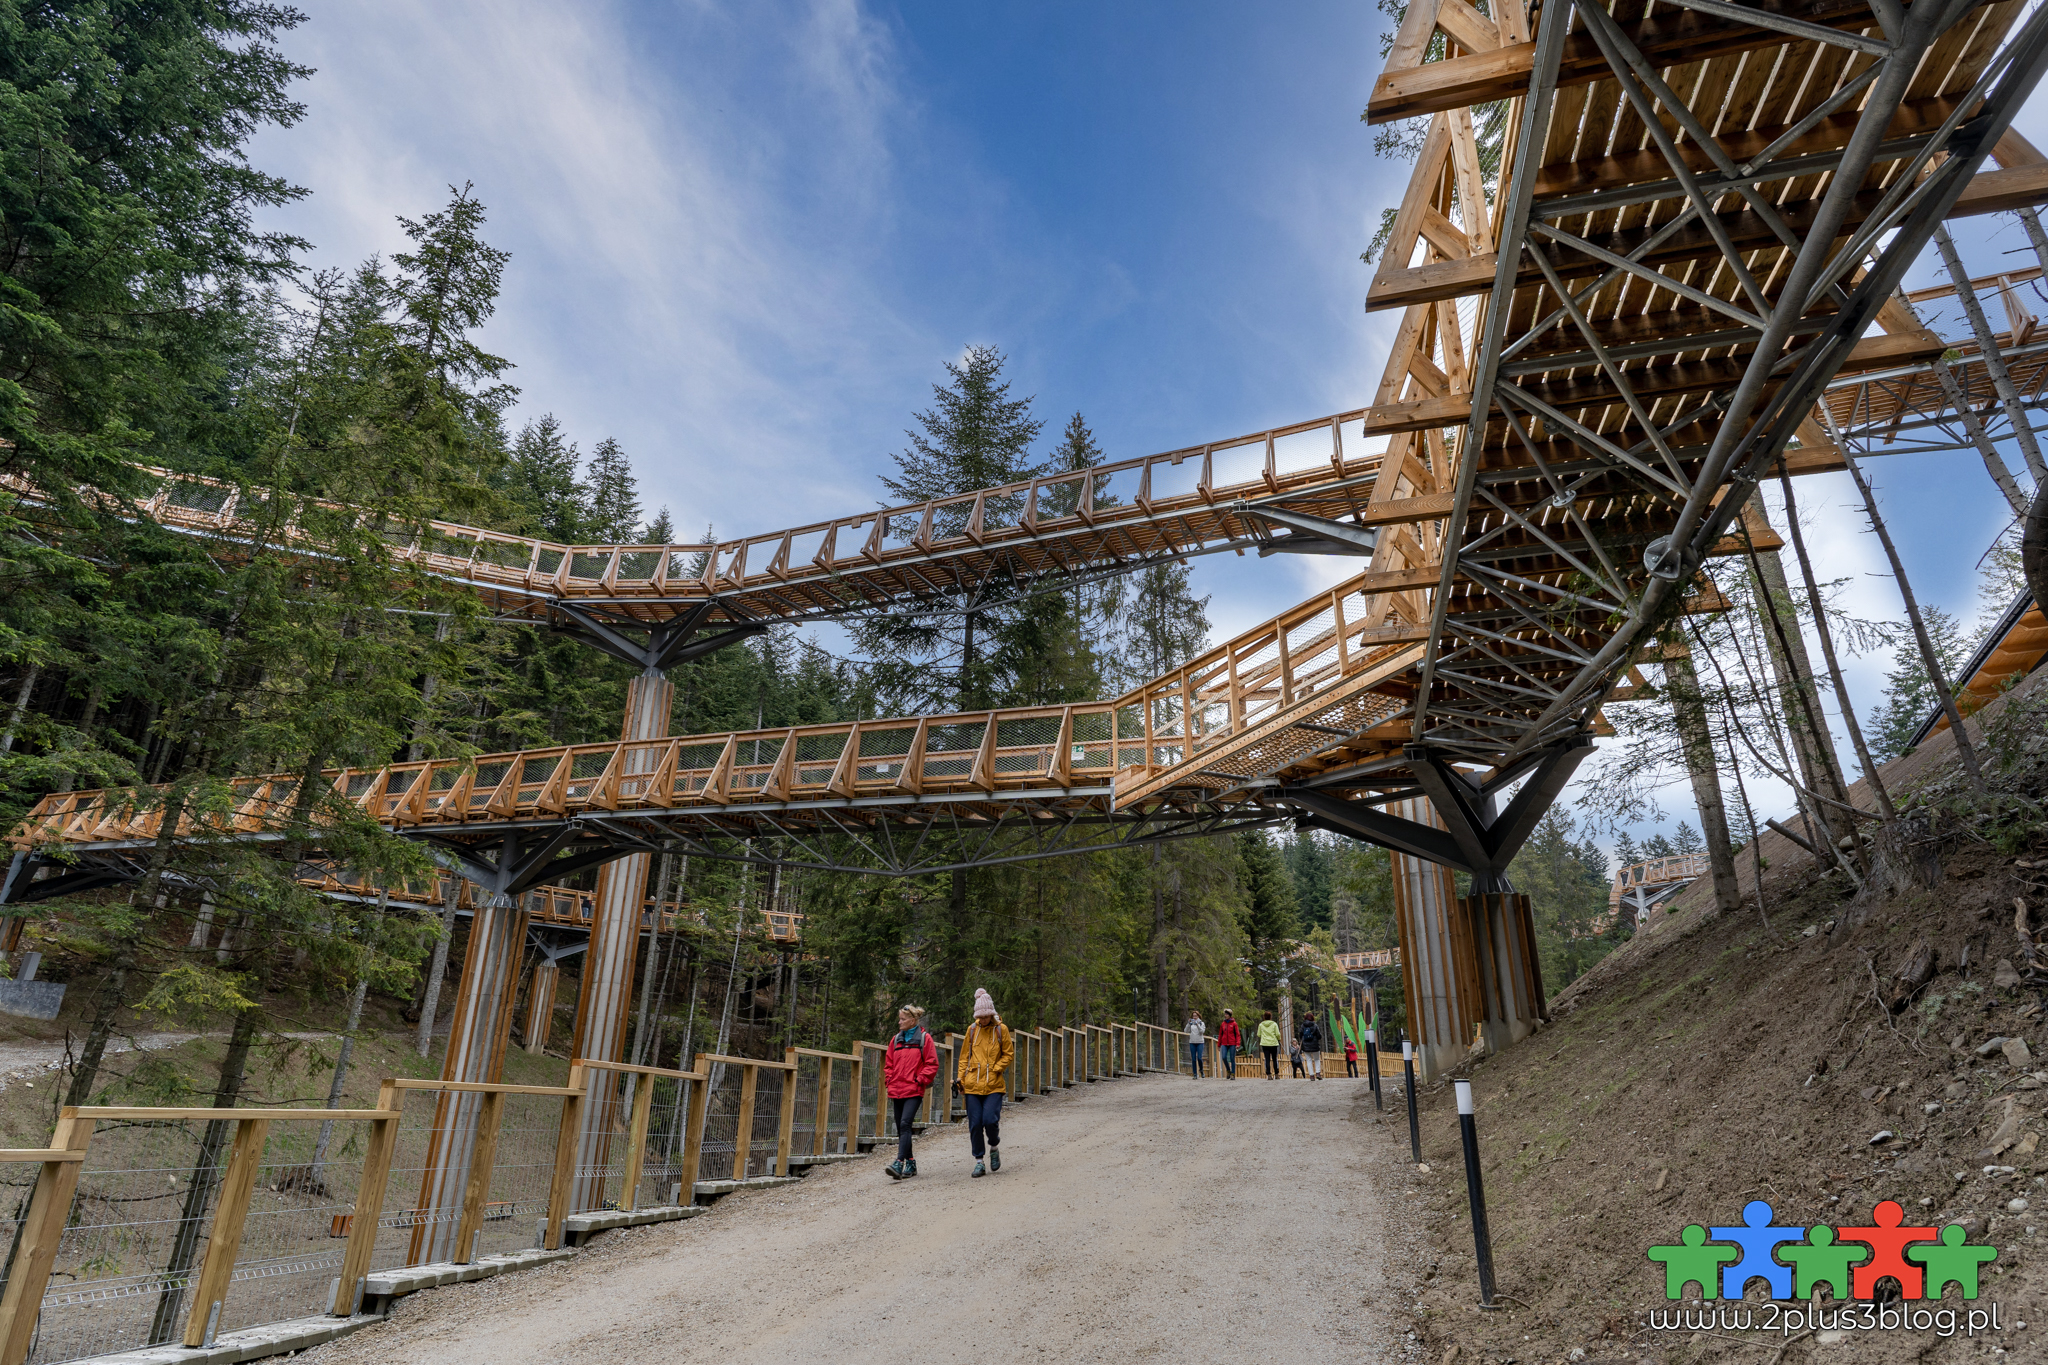 Nowa i obecnie jedna z największych atrakcji turystycznych Podhala - "Brama w Gorce" została właśnie otwarta dla gości!